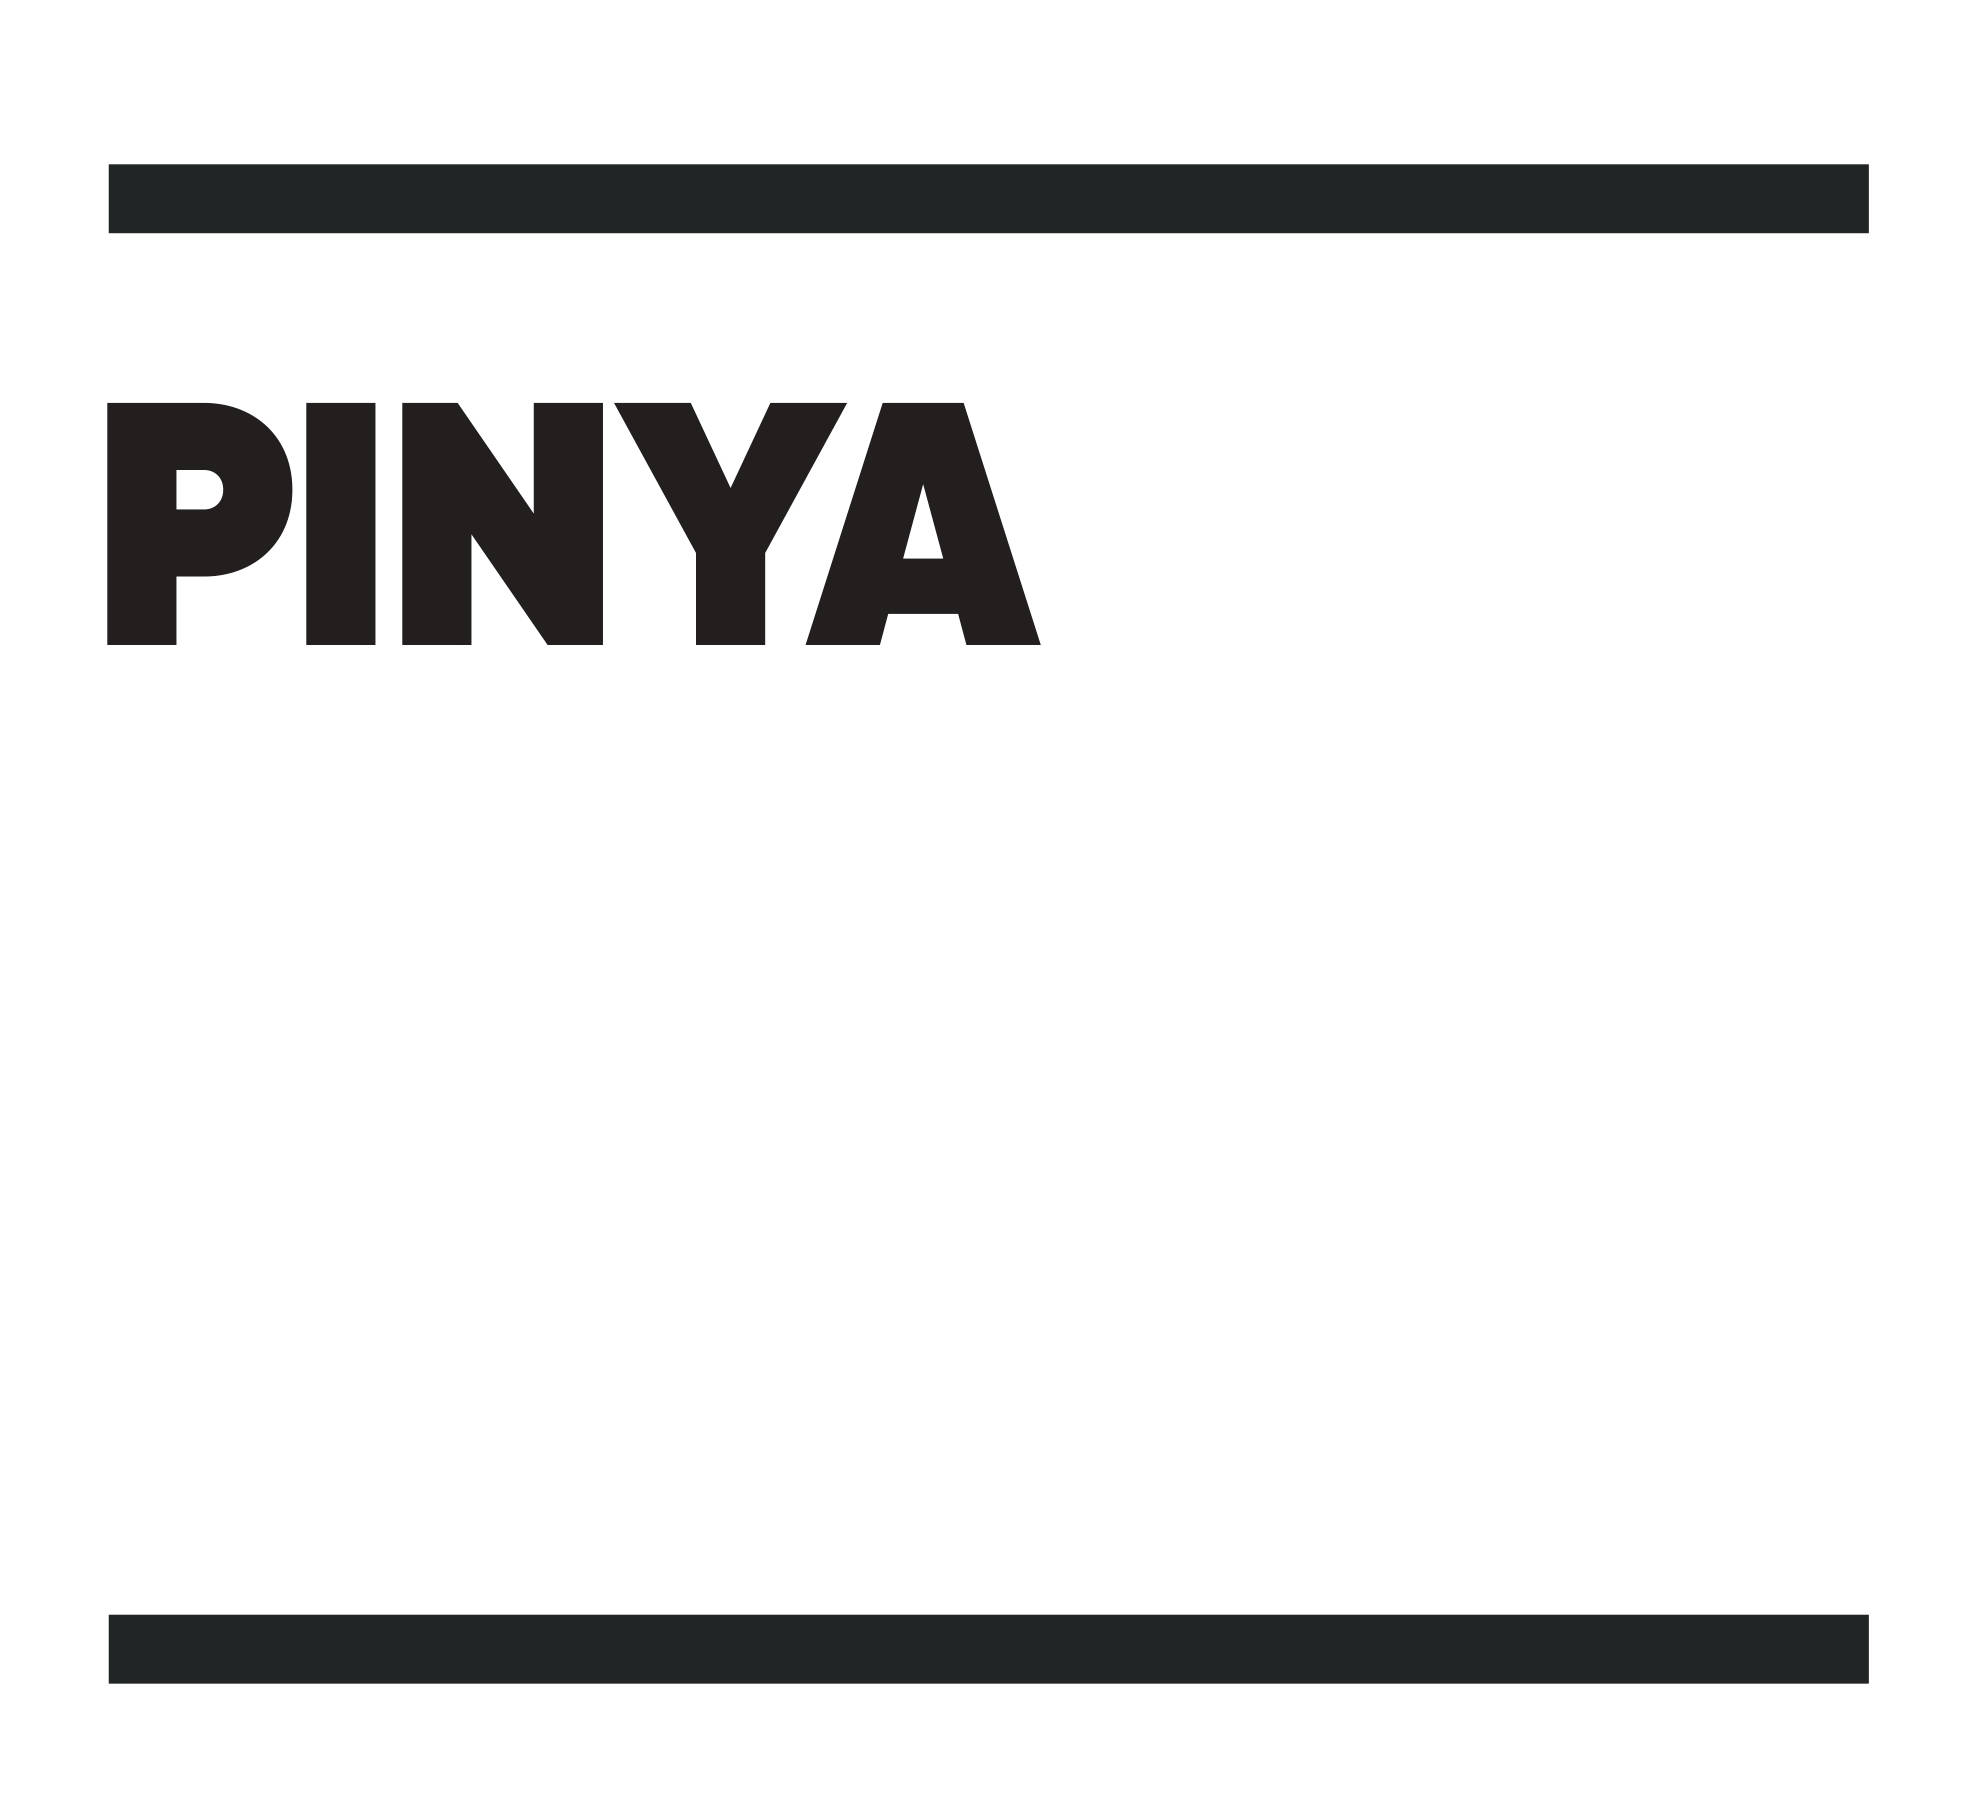 Pinya